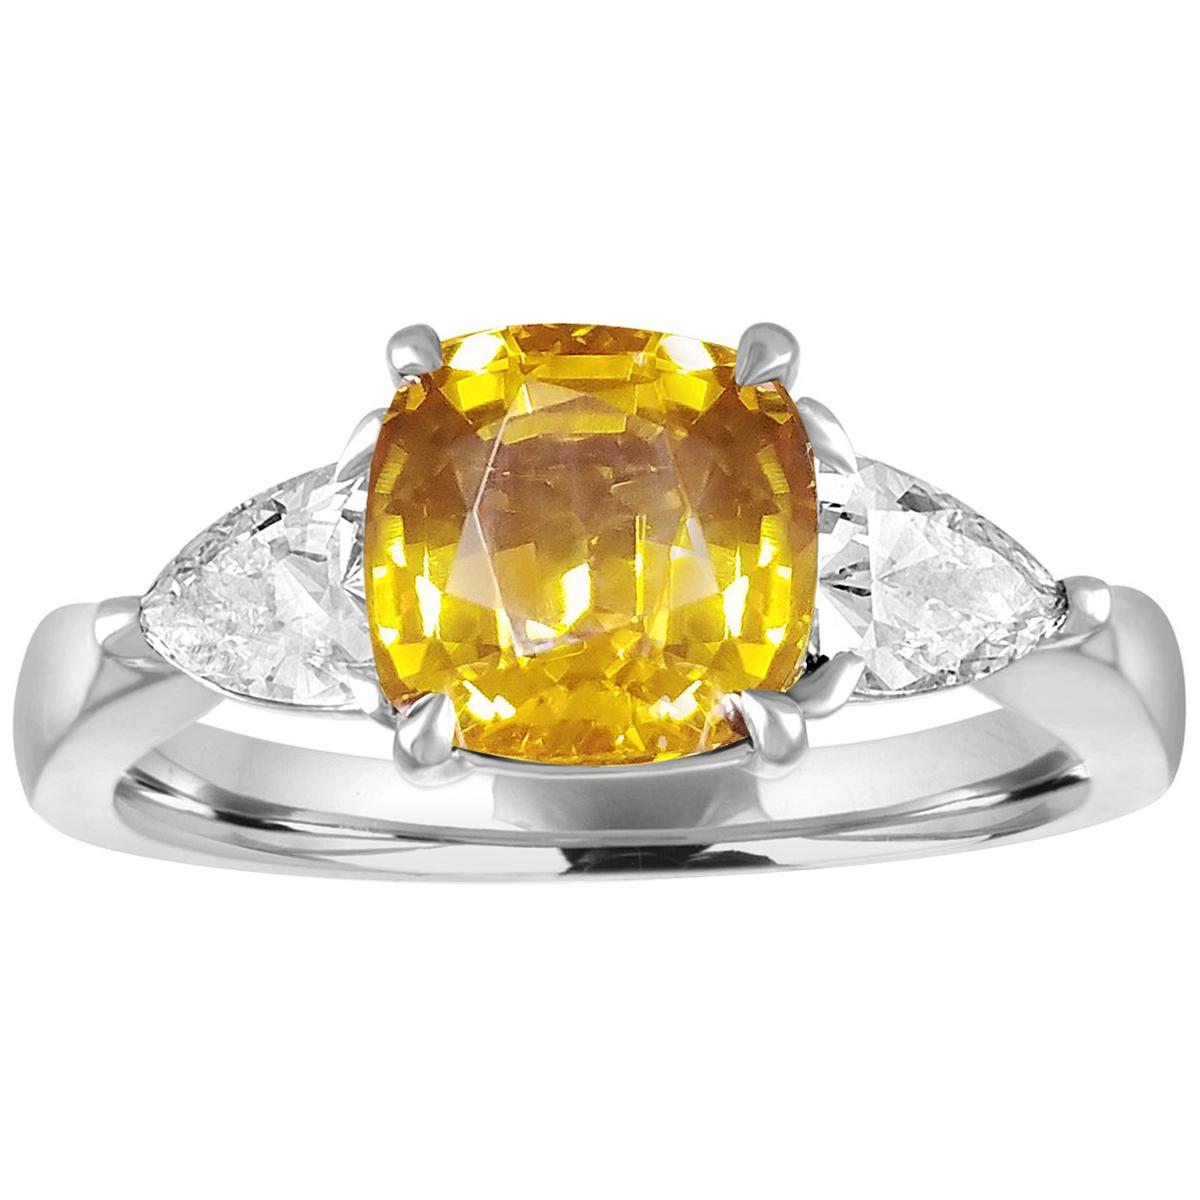 Bague en or avec diamants et saphir jaune orange coussin de 3,16 carats certifié AGL